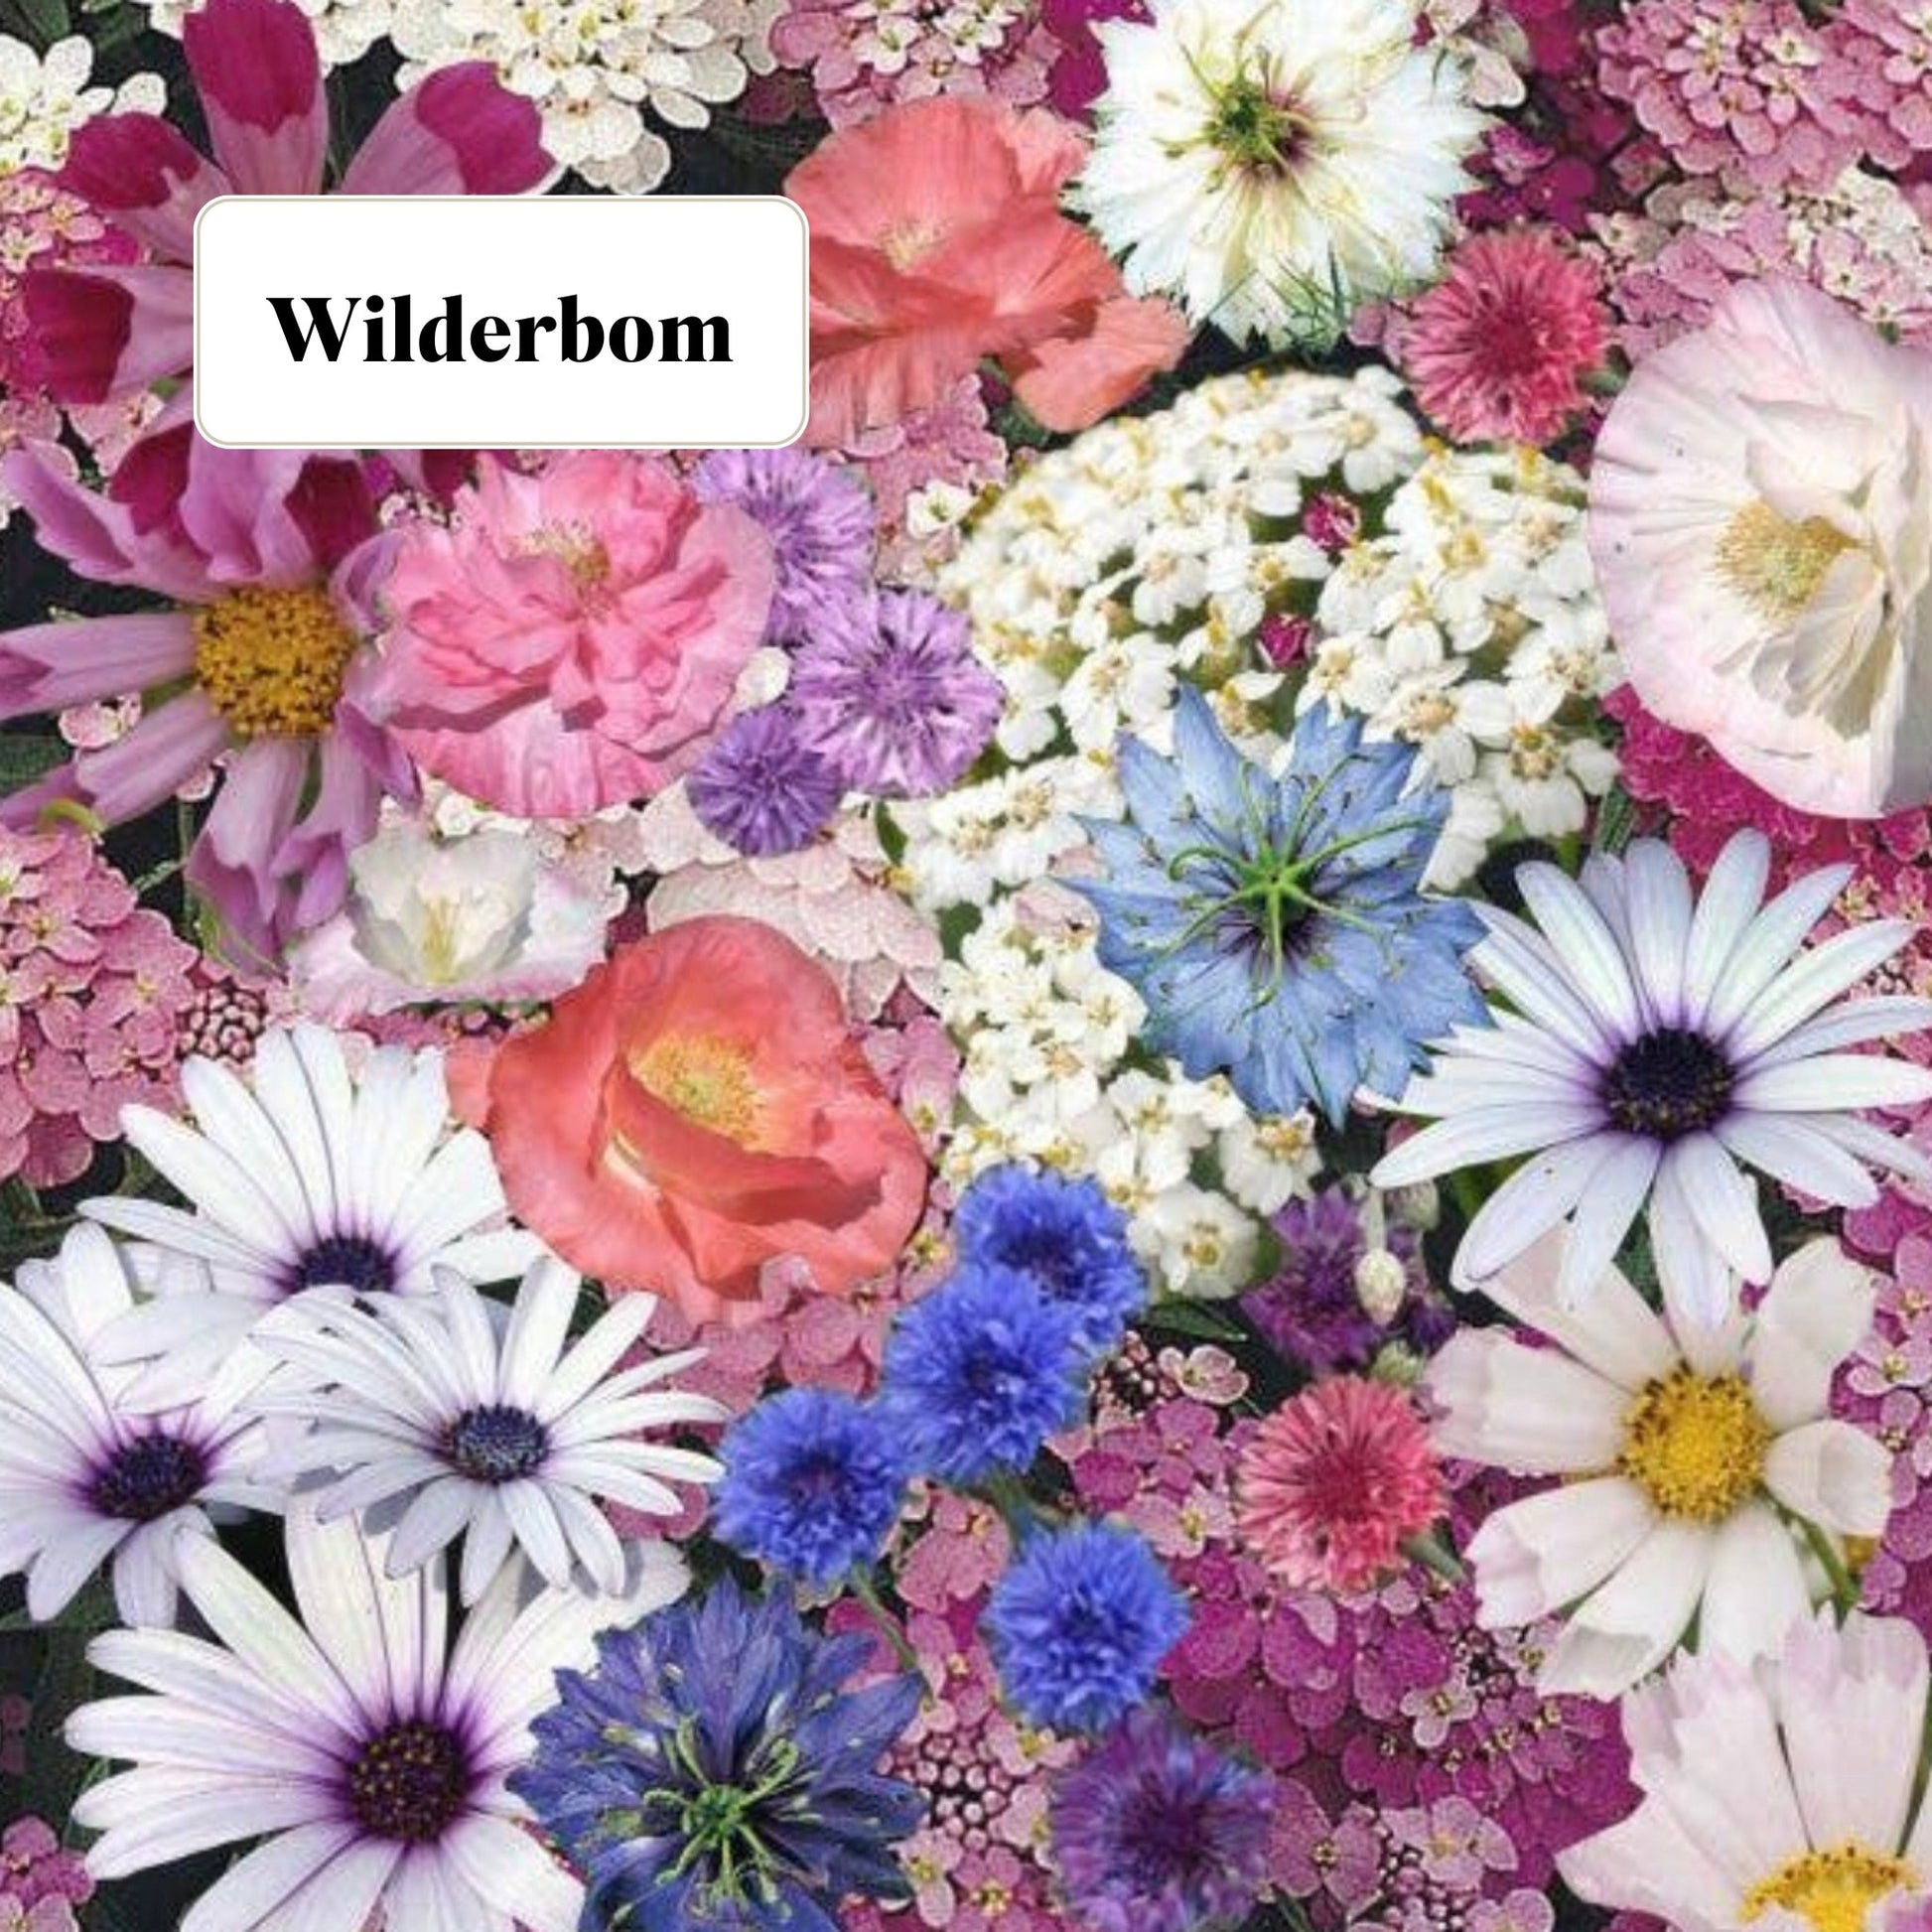 Wildflower Seed Seedbom - Tangledroots.shop